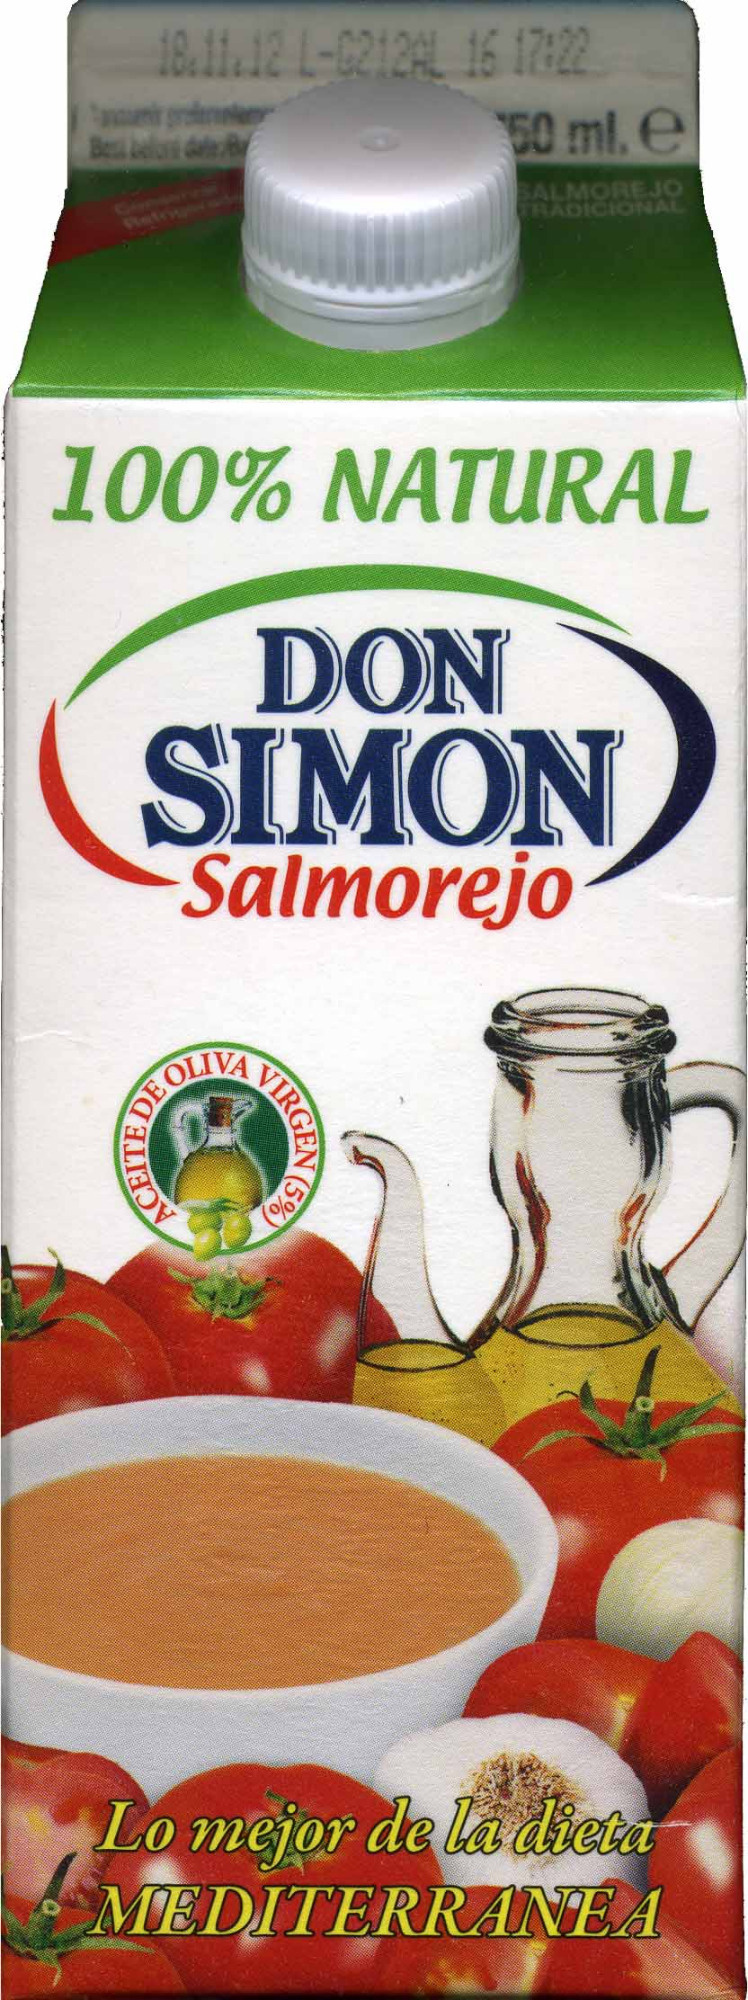 Salmorejo - Product - es